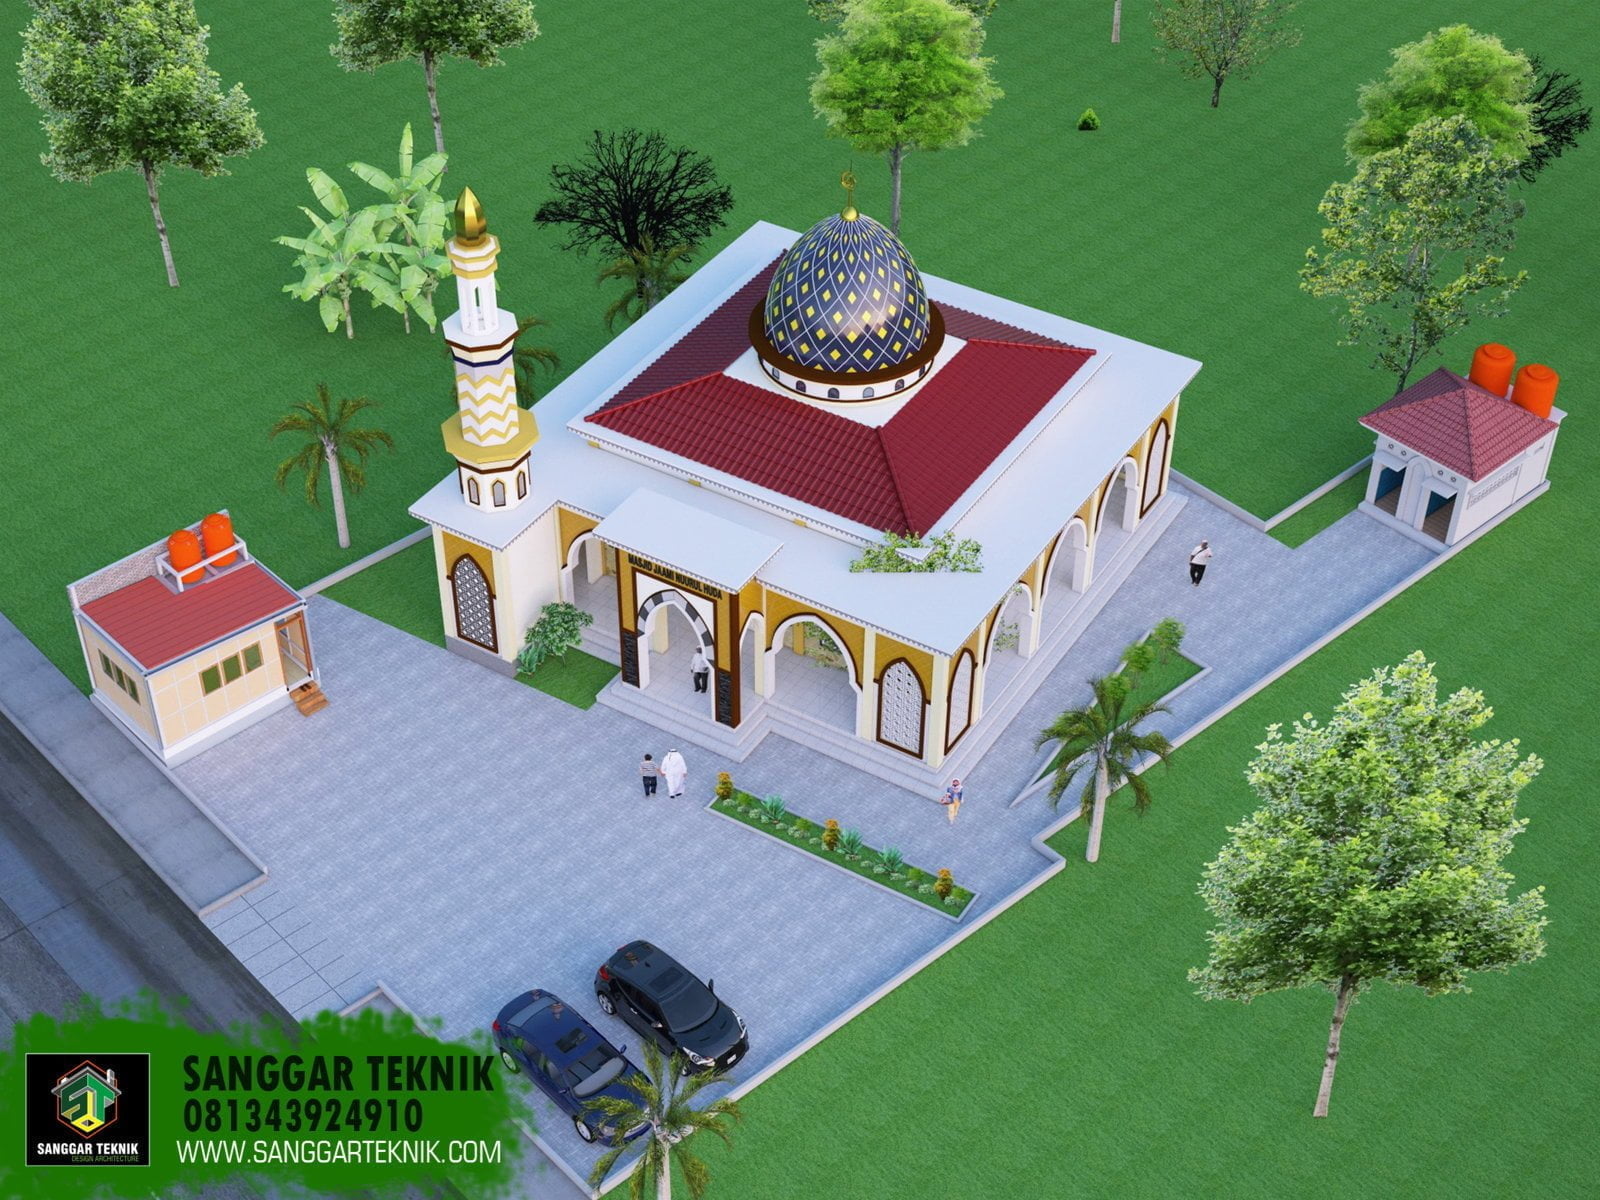 82 Ragam Seni Desain Teras Masjid Yang Wajib Kamu Ketahui